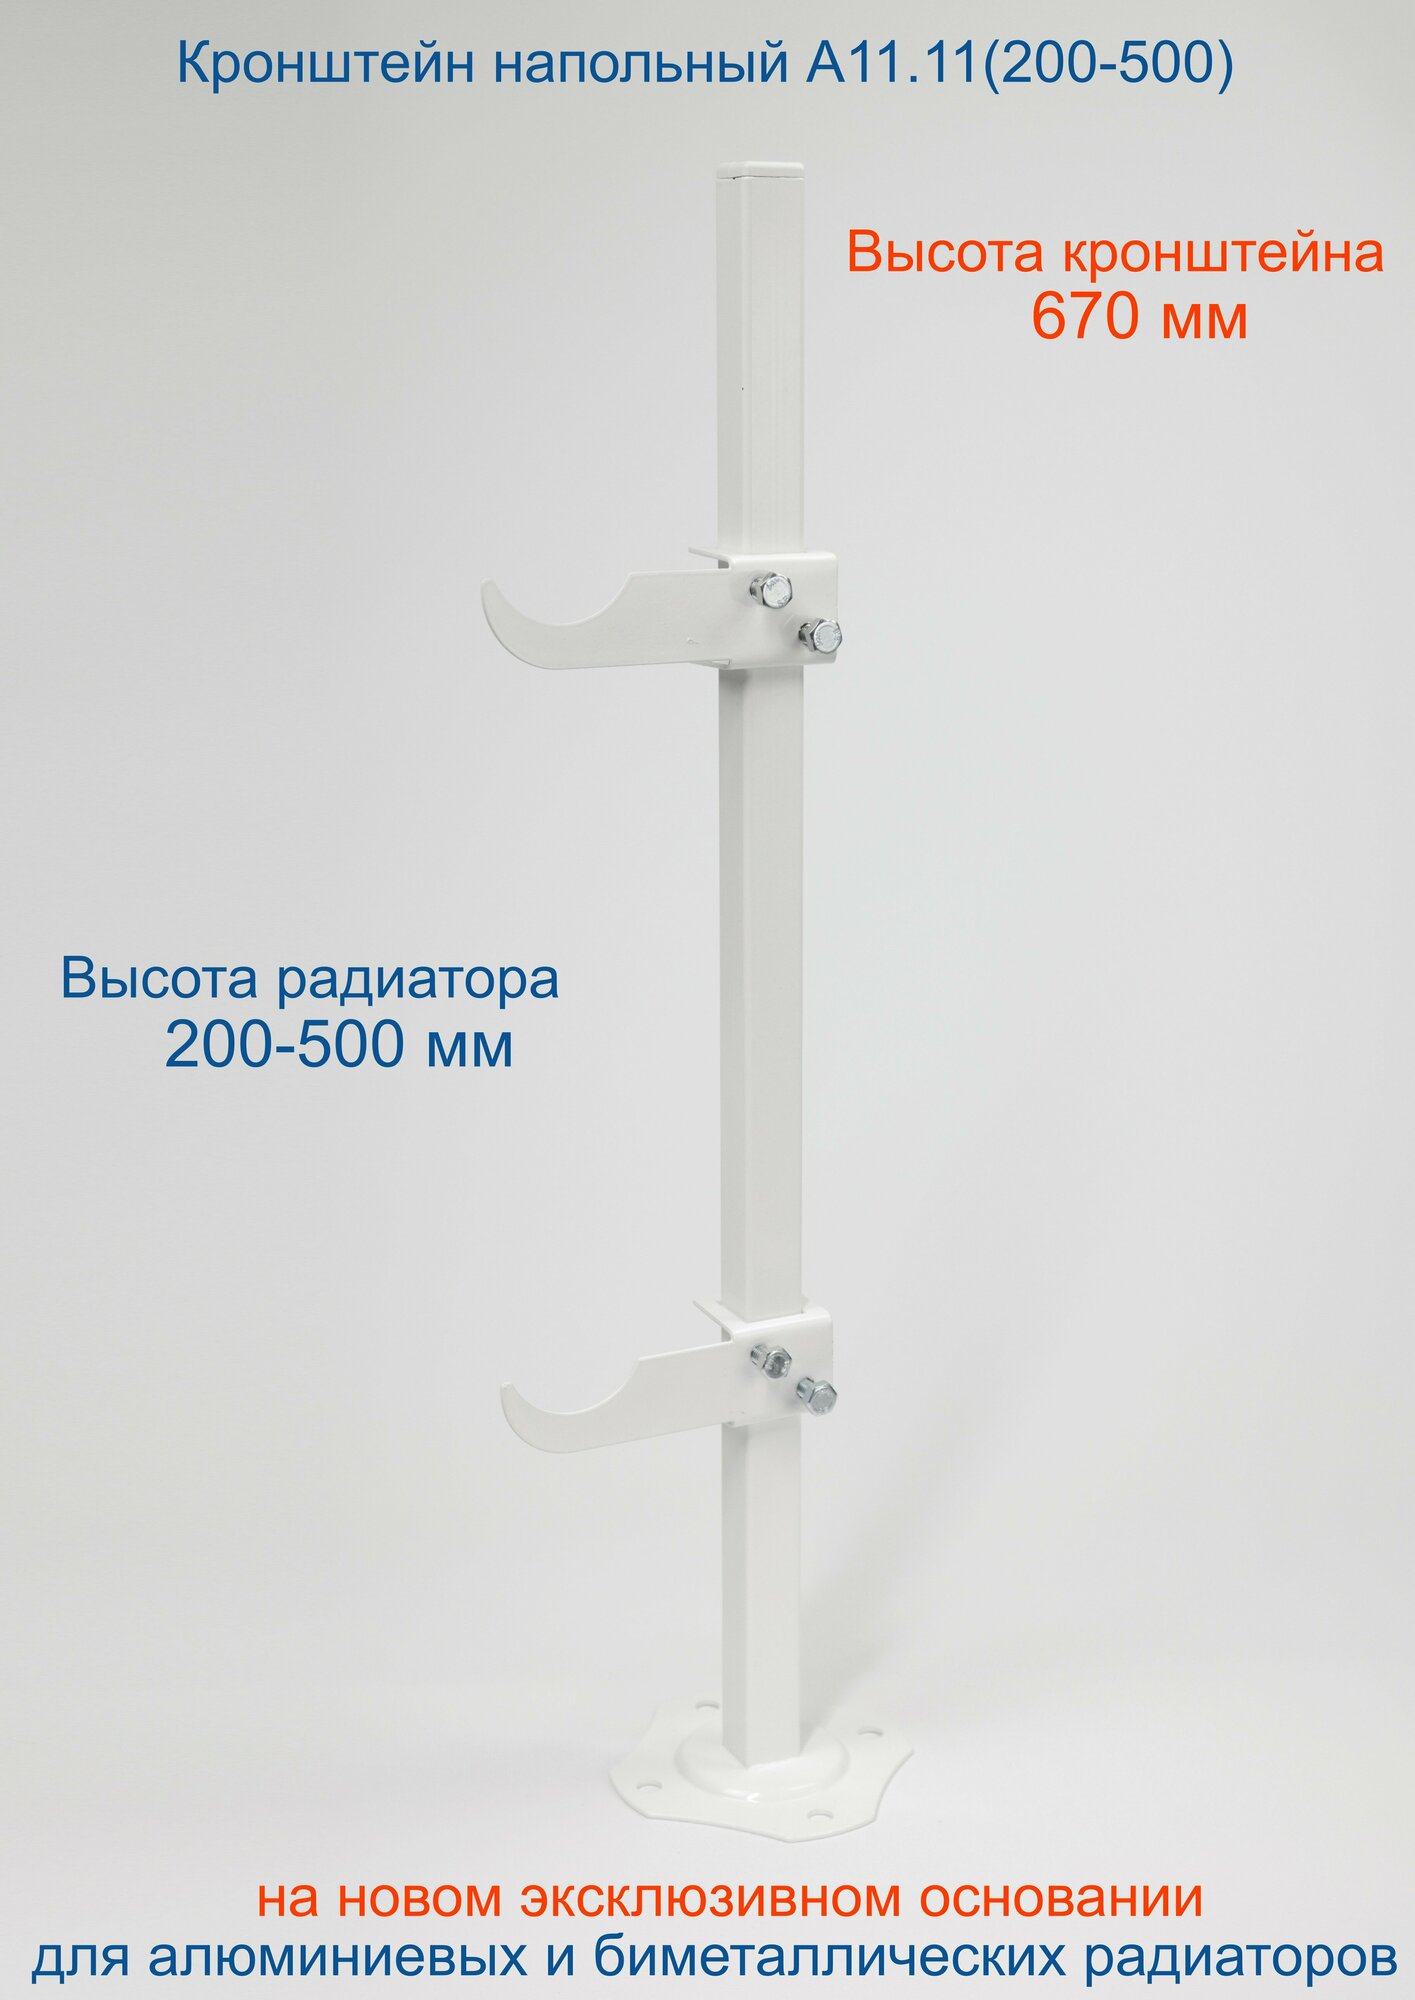 Кронштейн напольный регулируемый Кайрос А11.11 для алюминиевых и биметаллических радиаторов высотой 200-500 мм (высота стойки 670 мм)